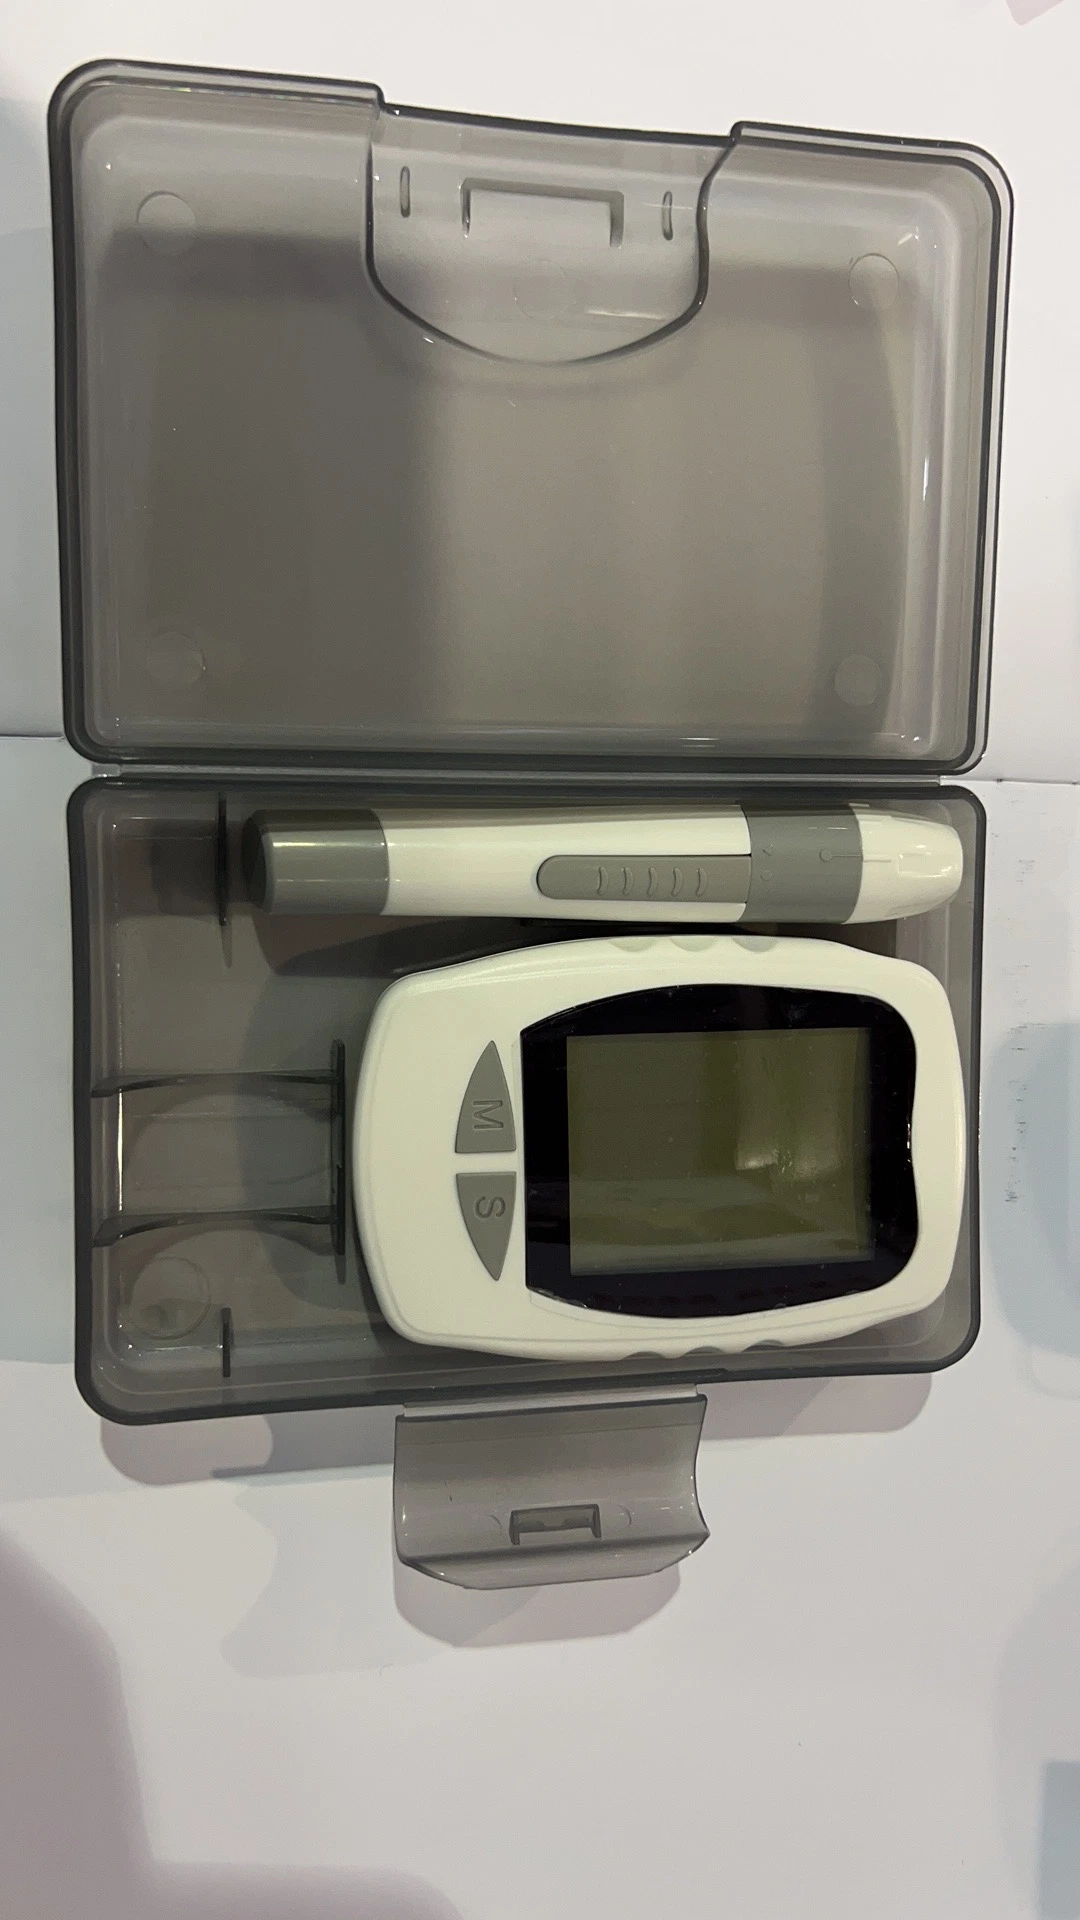 Fábrica Mayorista/Proveedors inteligente portátil One Touch Select Code sangre libre Tiras reactivas para glucosa